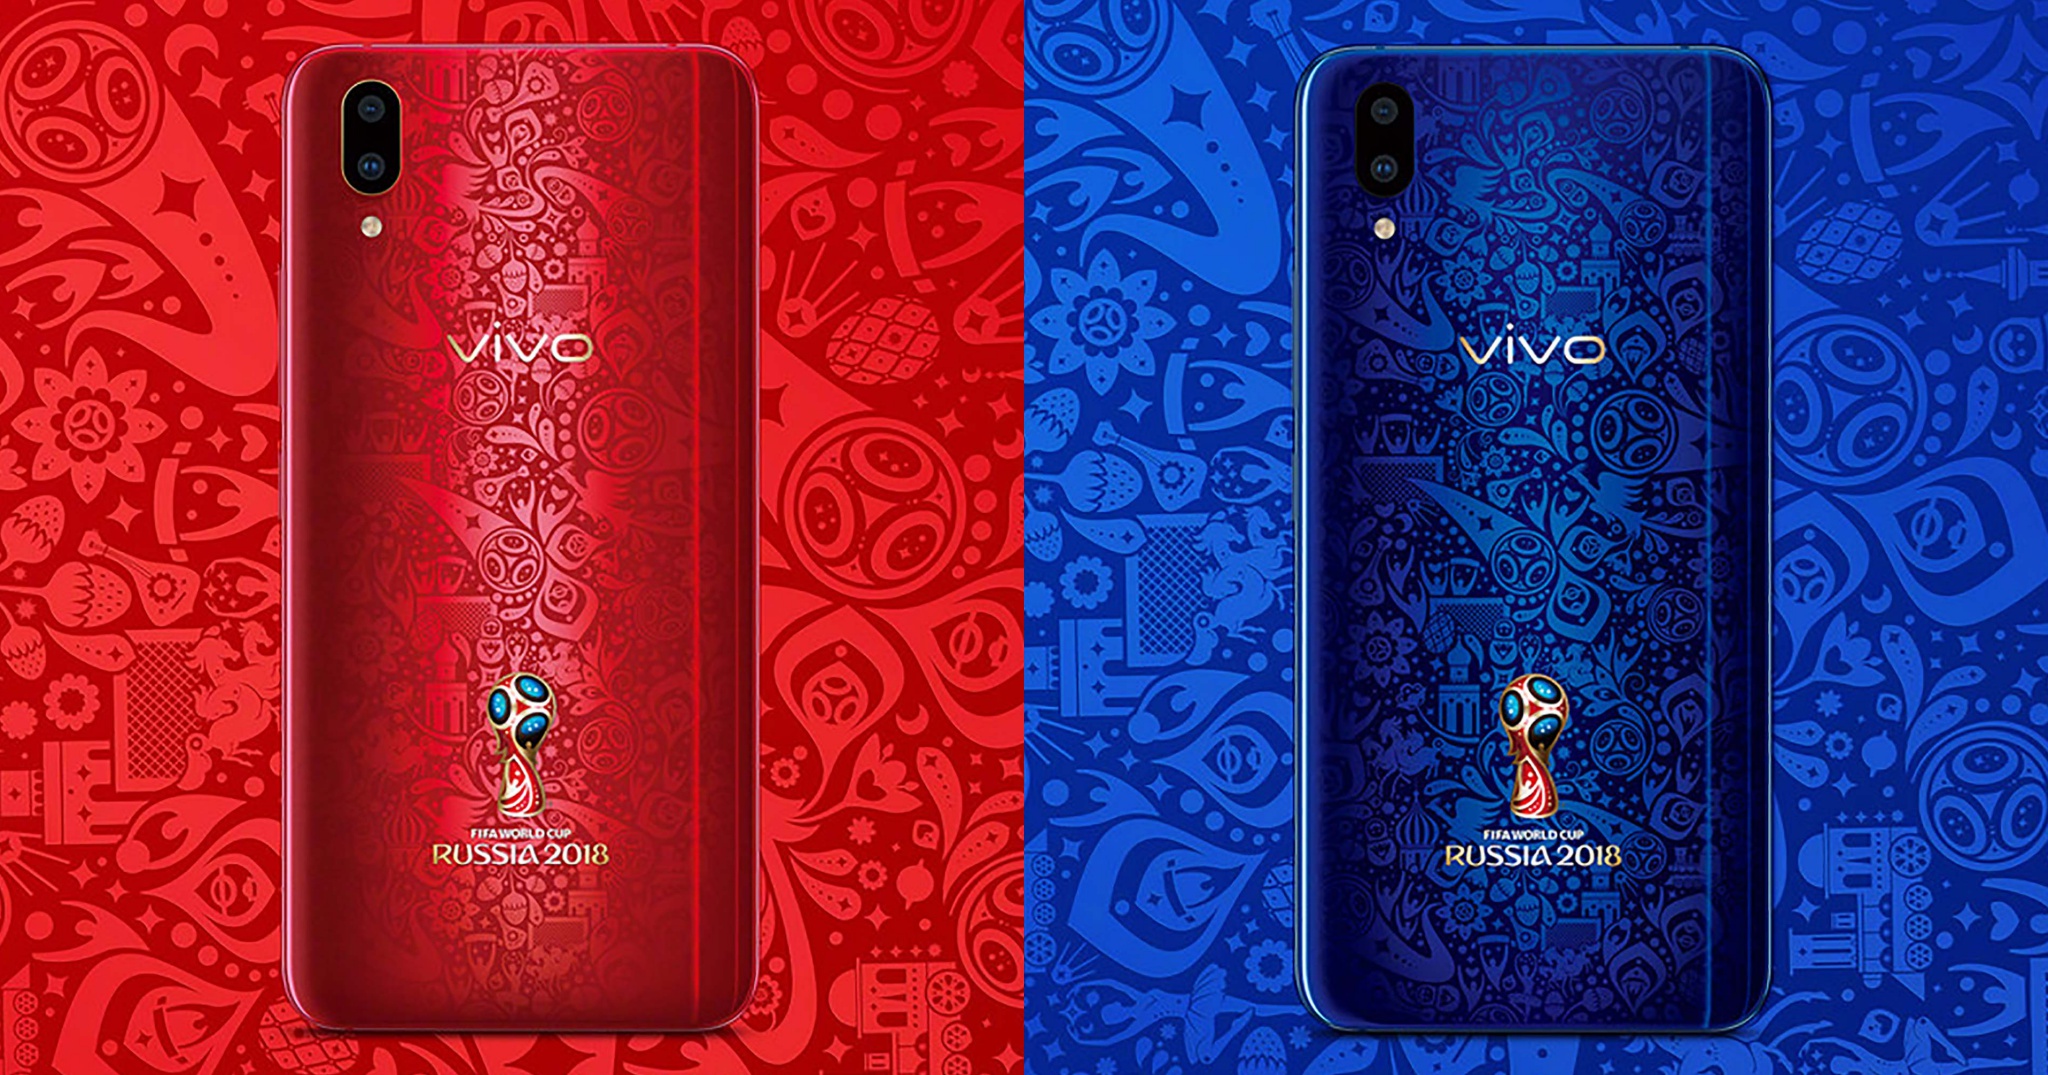 Vivo ra mắt X21 Worldcup Edition với hai màu xanh và đỏ